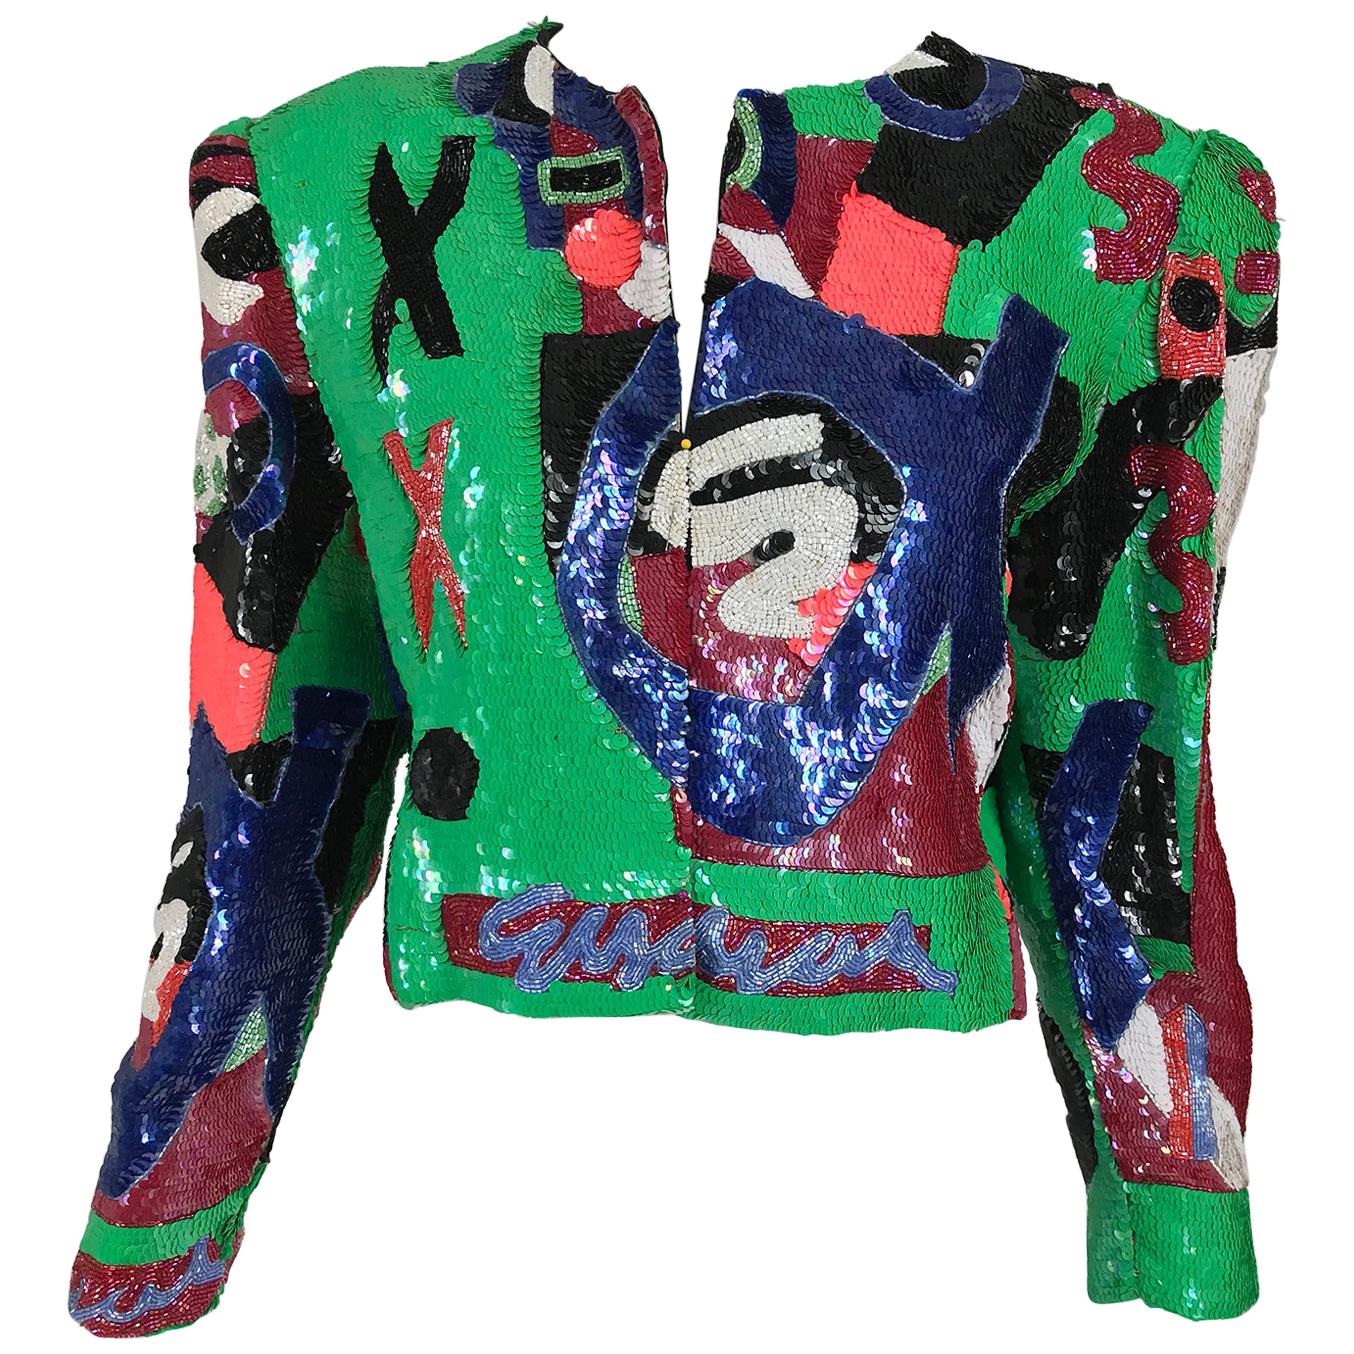 Jeanette St. Martin Beaded Art Sequin Jacket 1980s